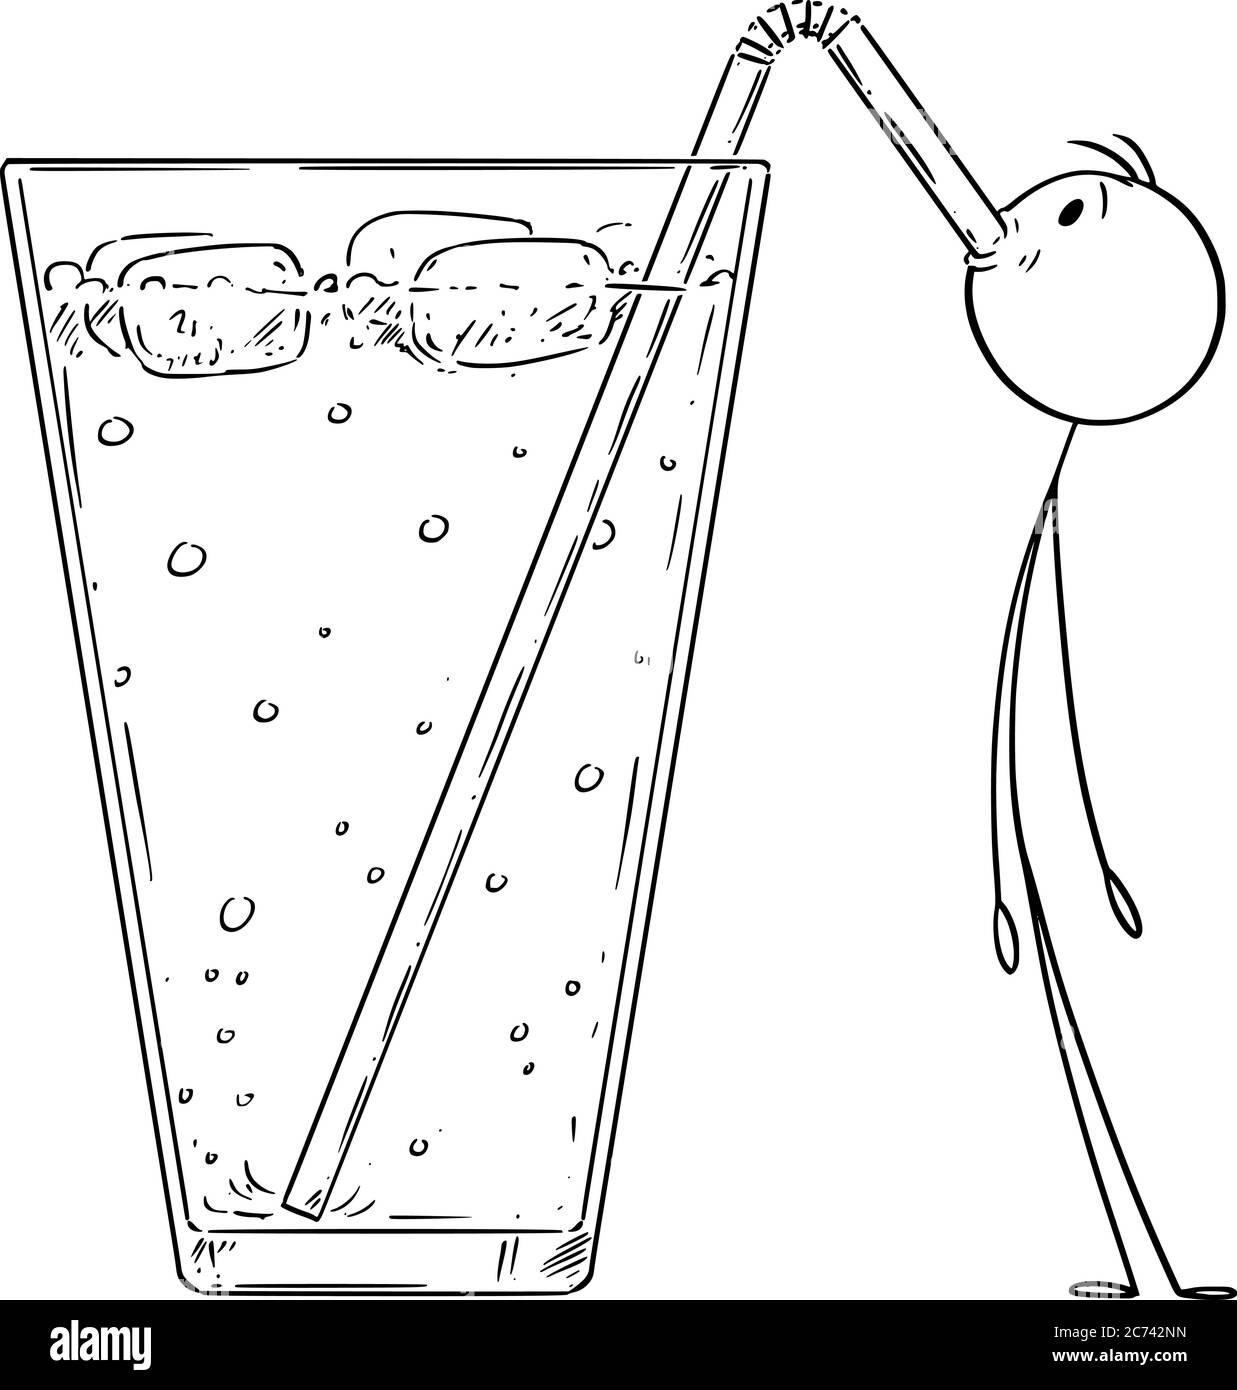 Vektor Cartoon Stick Figur Zeichnung konzeptionelle Illustration von kleinen Mann trinken kalte Limonade, Cocktail oder trinken mit Stroh. Stock Vektor